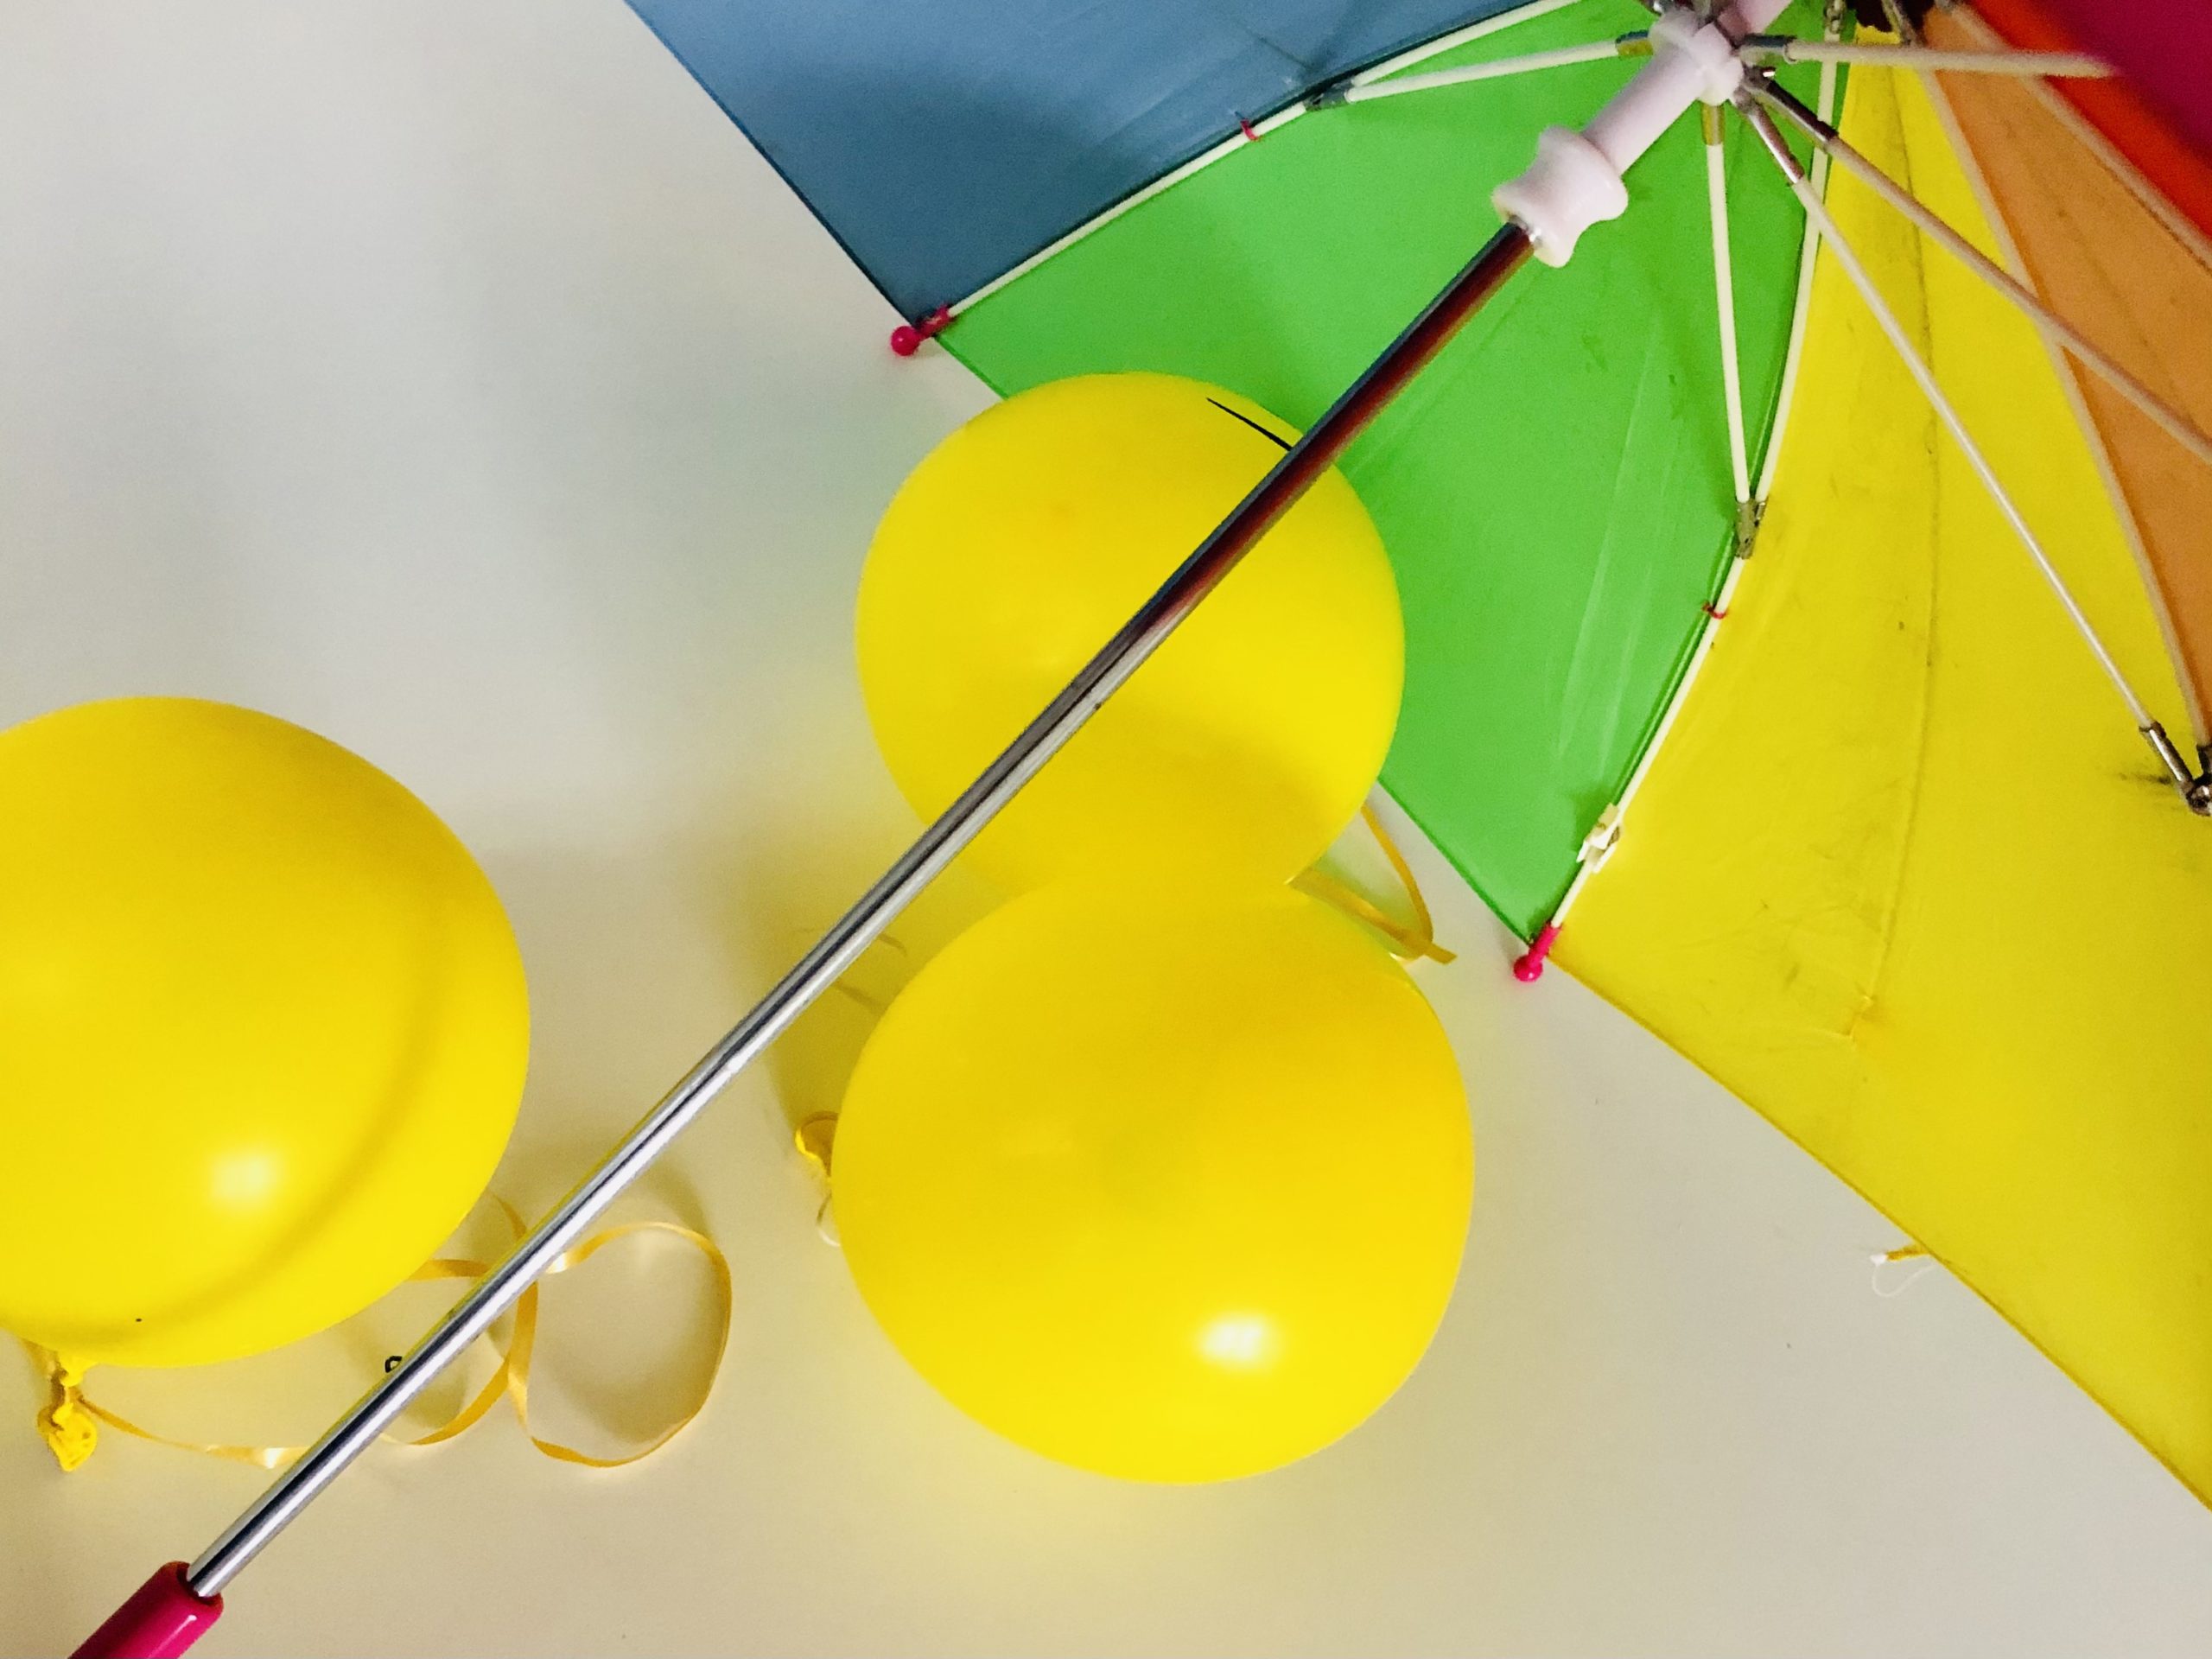 Bild zum Schritt 3 für die Kinder-Beschäftigung: 'Nun hängt ihr die Luftballons an die Stangen des Regenschirms....'